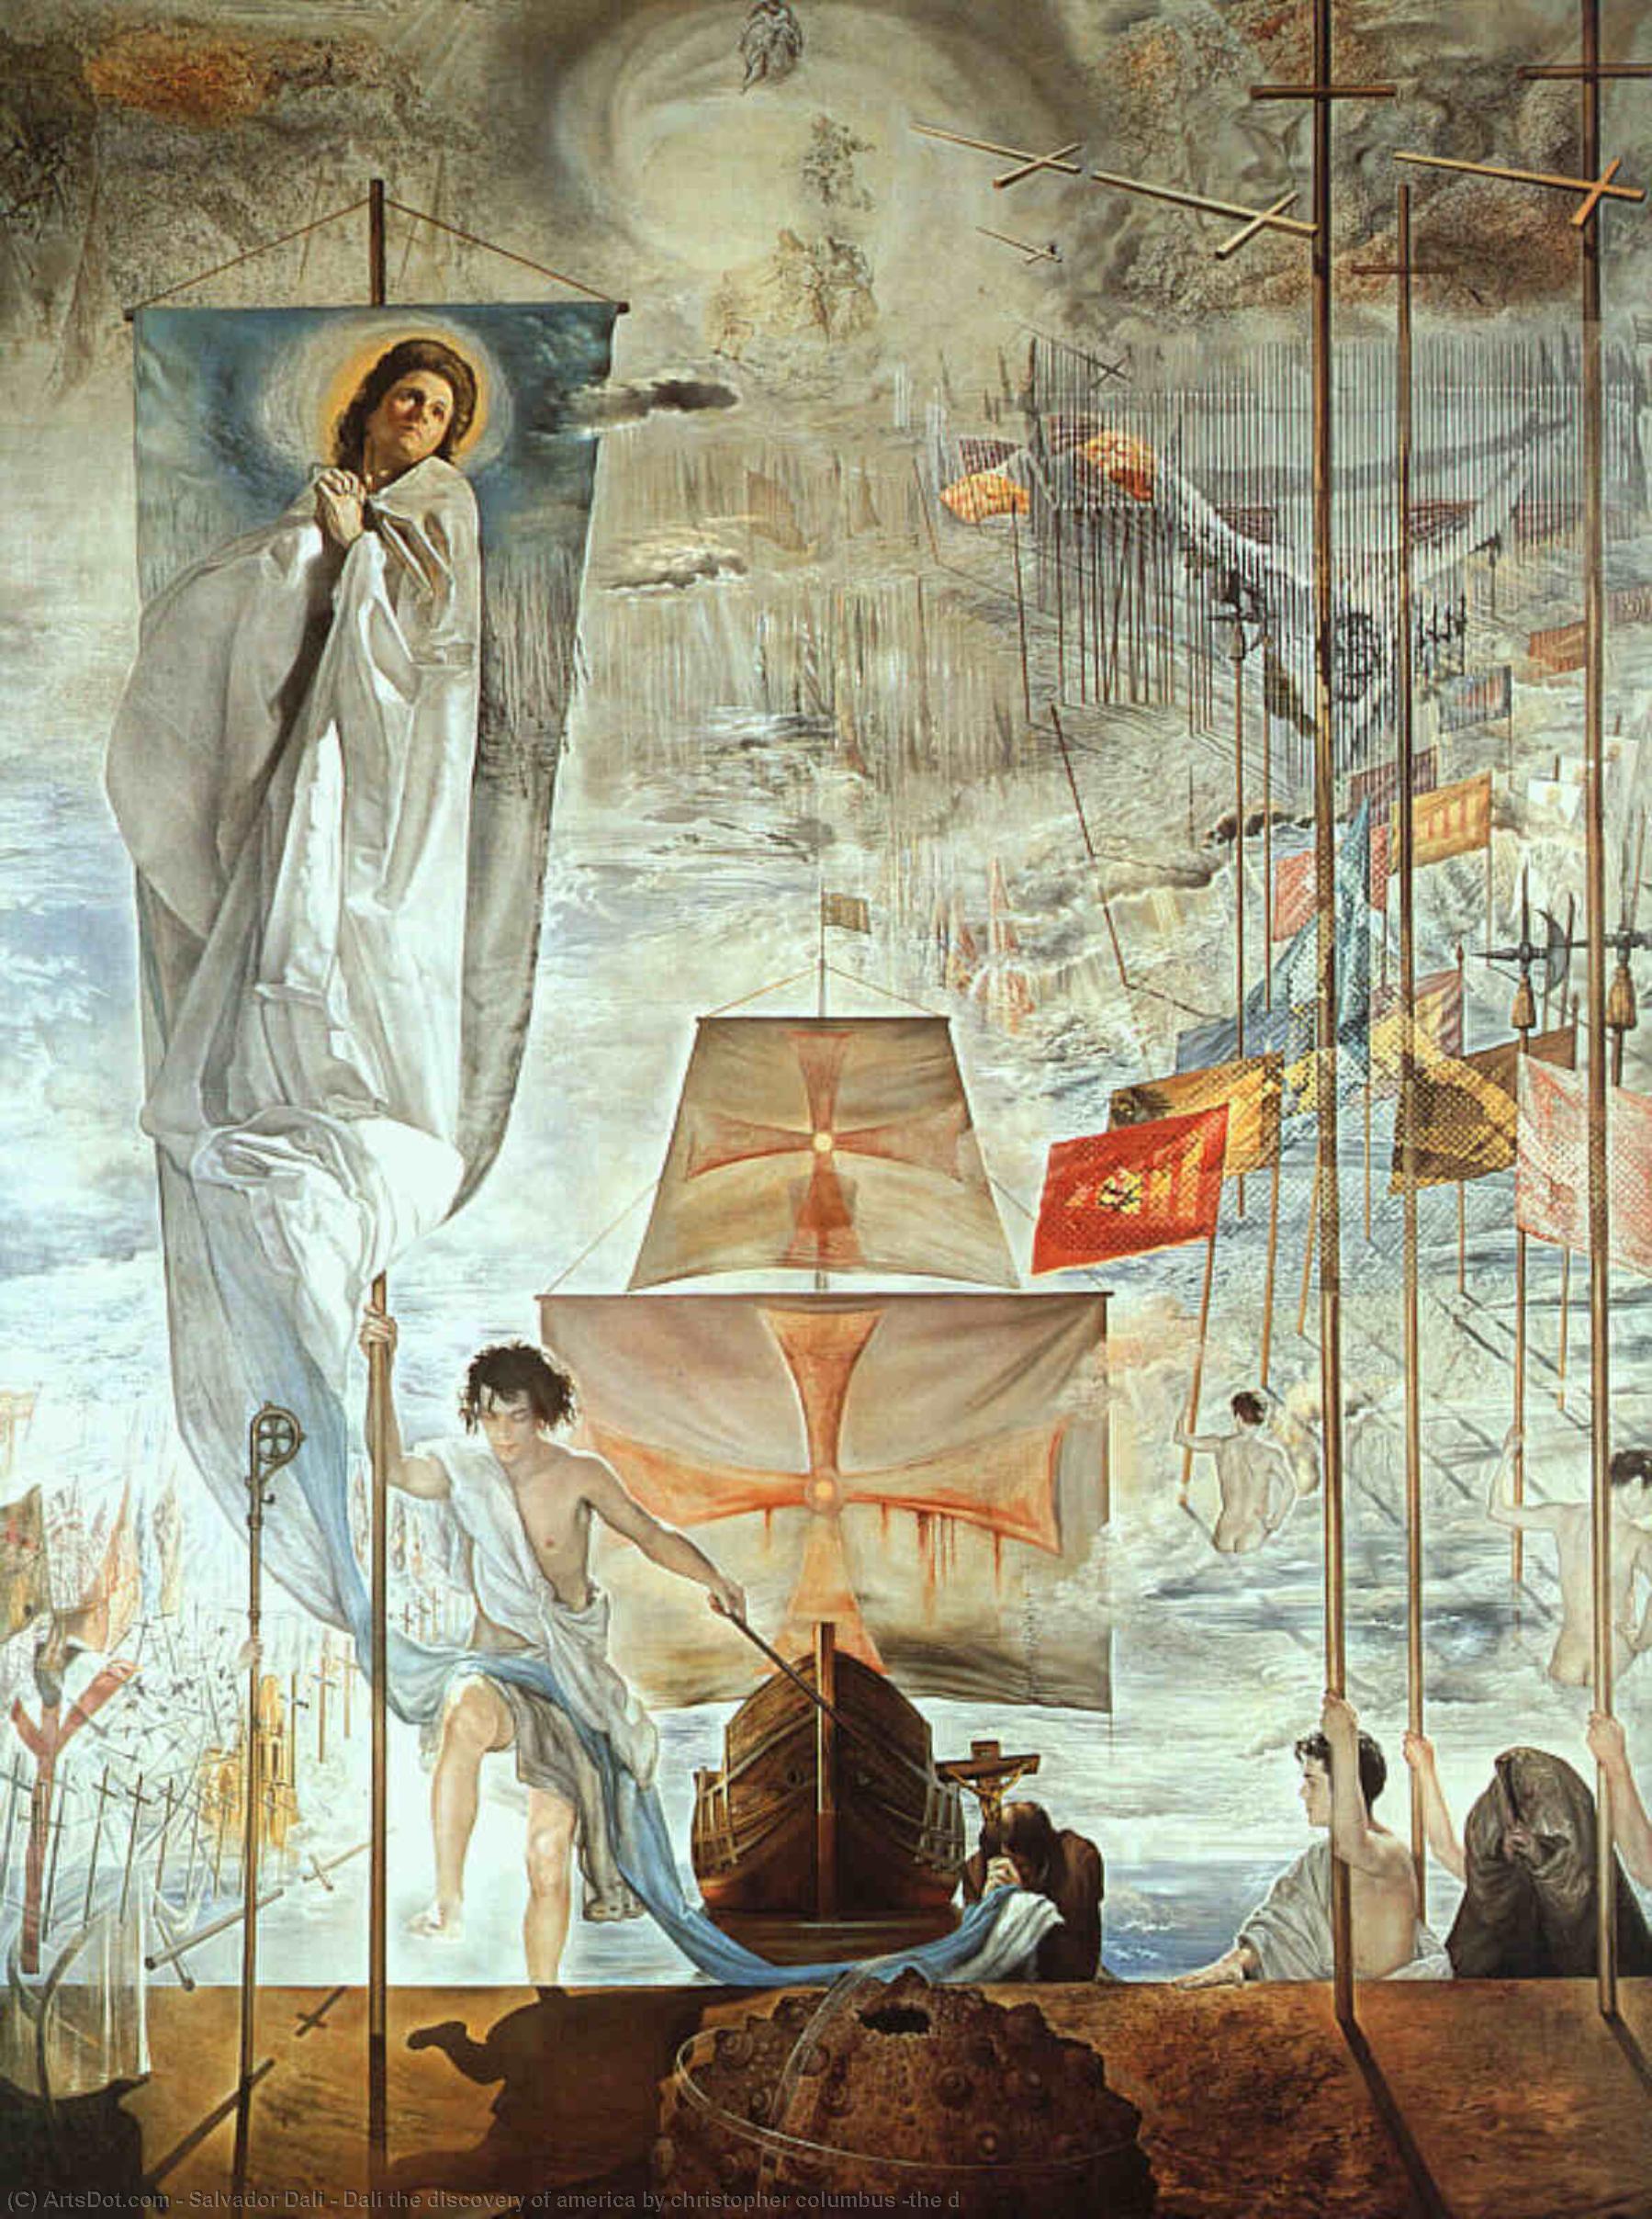 WikiOO.org - Enciclopédia das Belas Artes - Pintura, Arte por Salvador Dali - Dalí the discovery of america by christopher columbus (the d